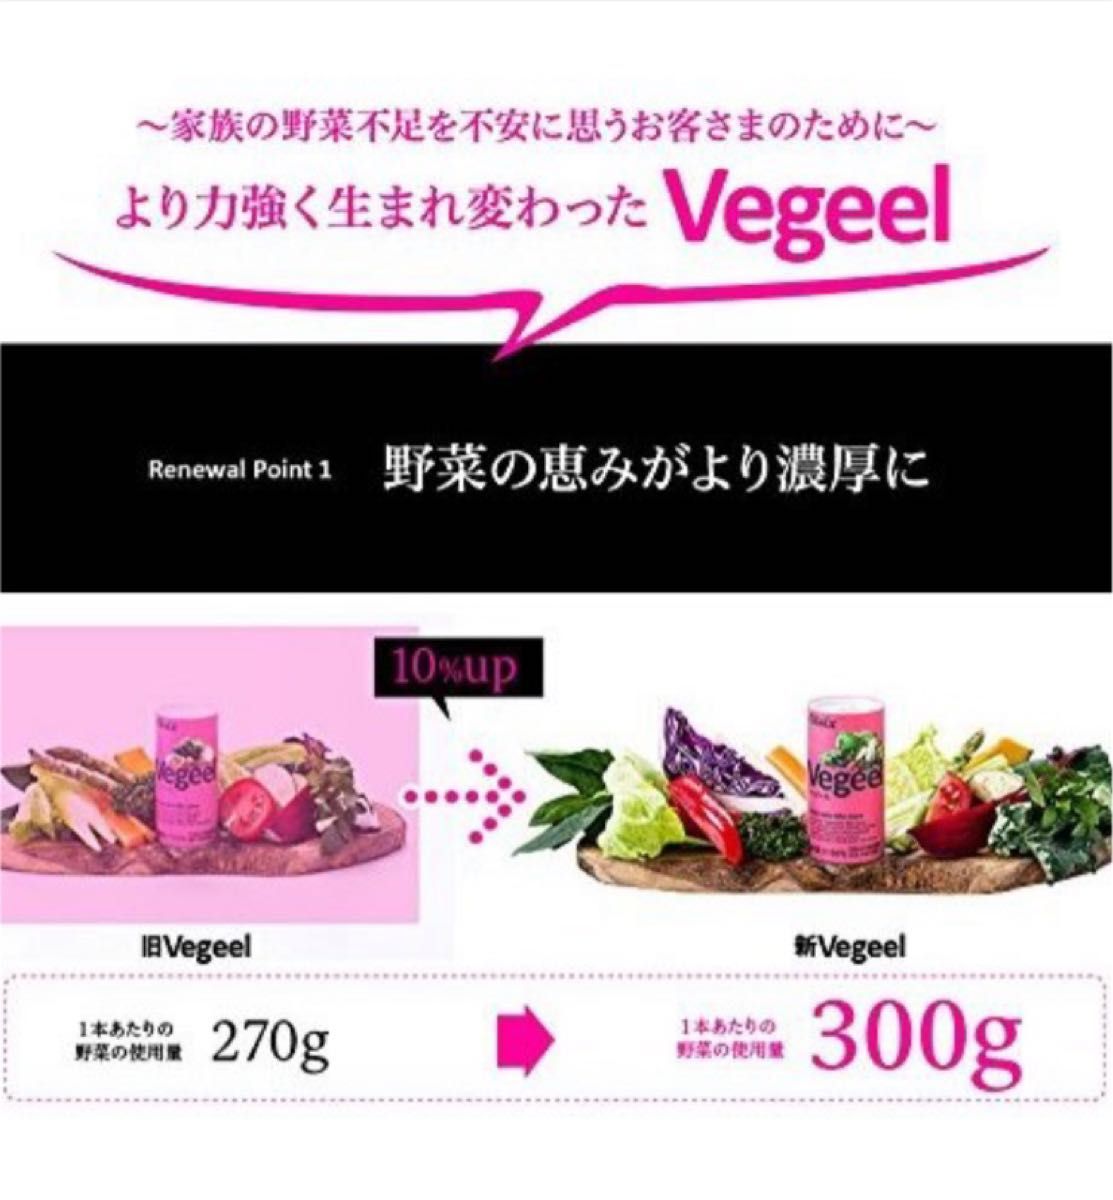 【新品】oisix オイシックス Vegeelべジール 野菜ジュース 60本入り